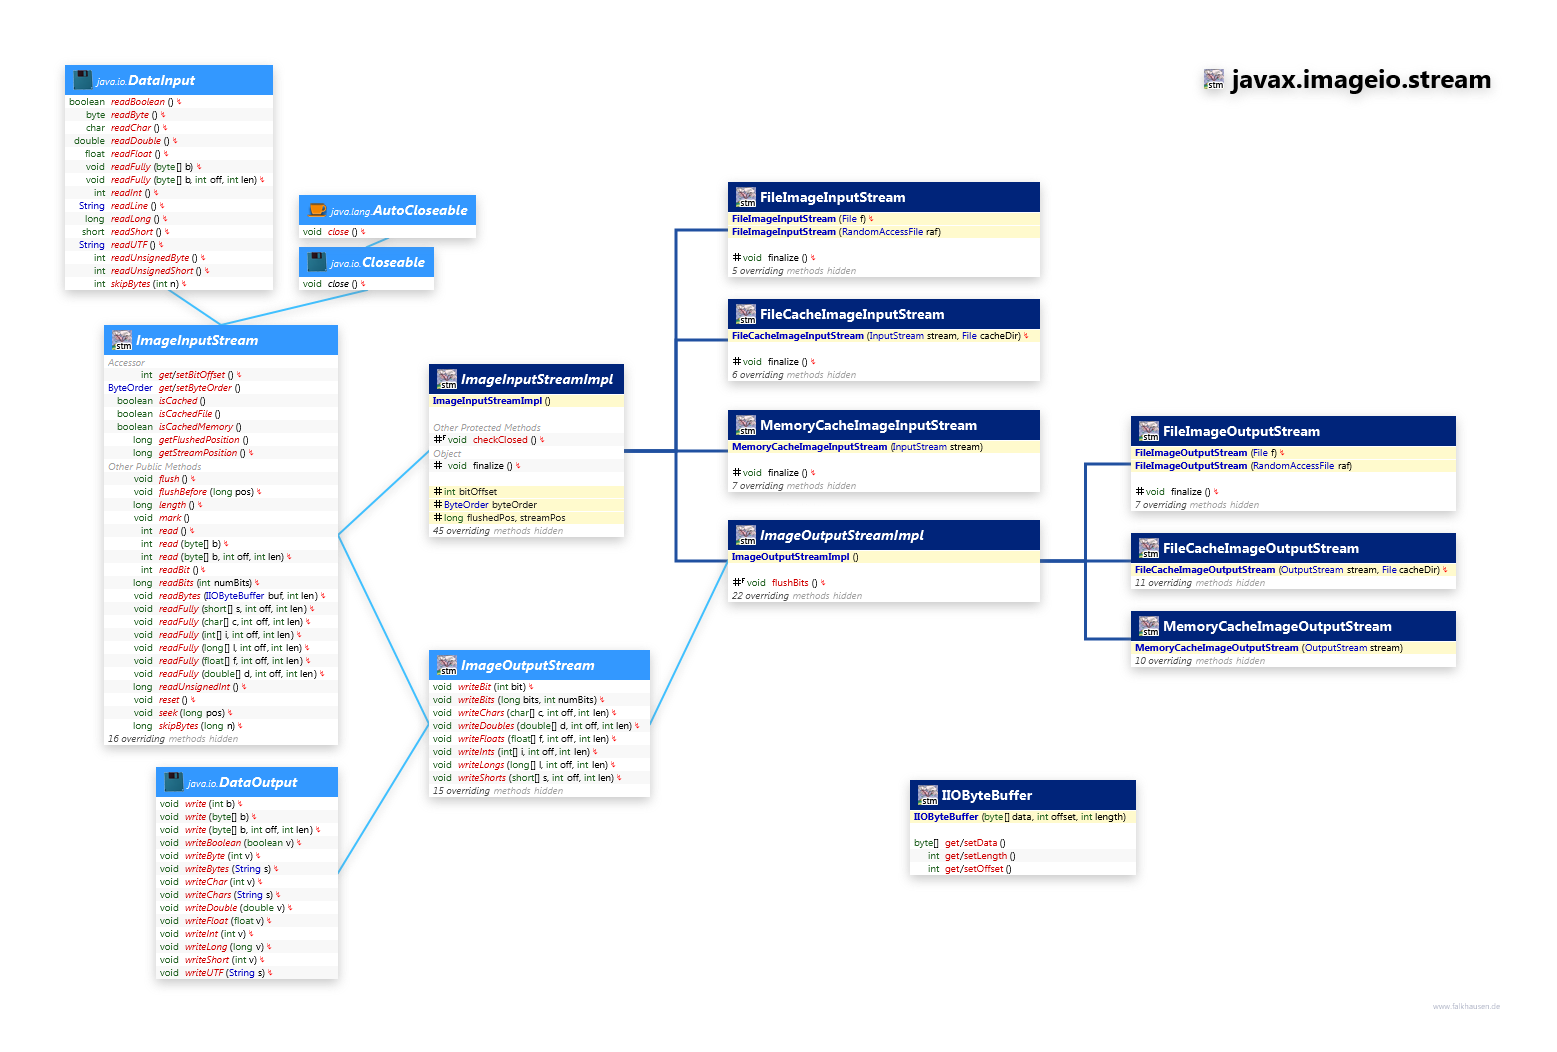 javax.imageio.stream class diagram and api documentation for Java 8